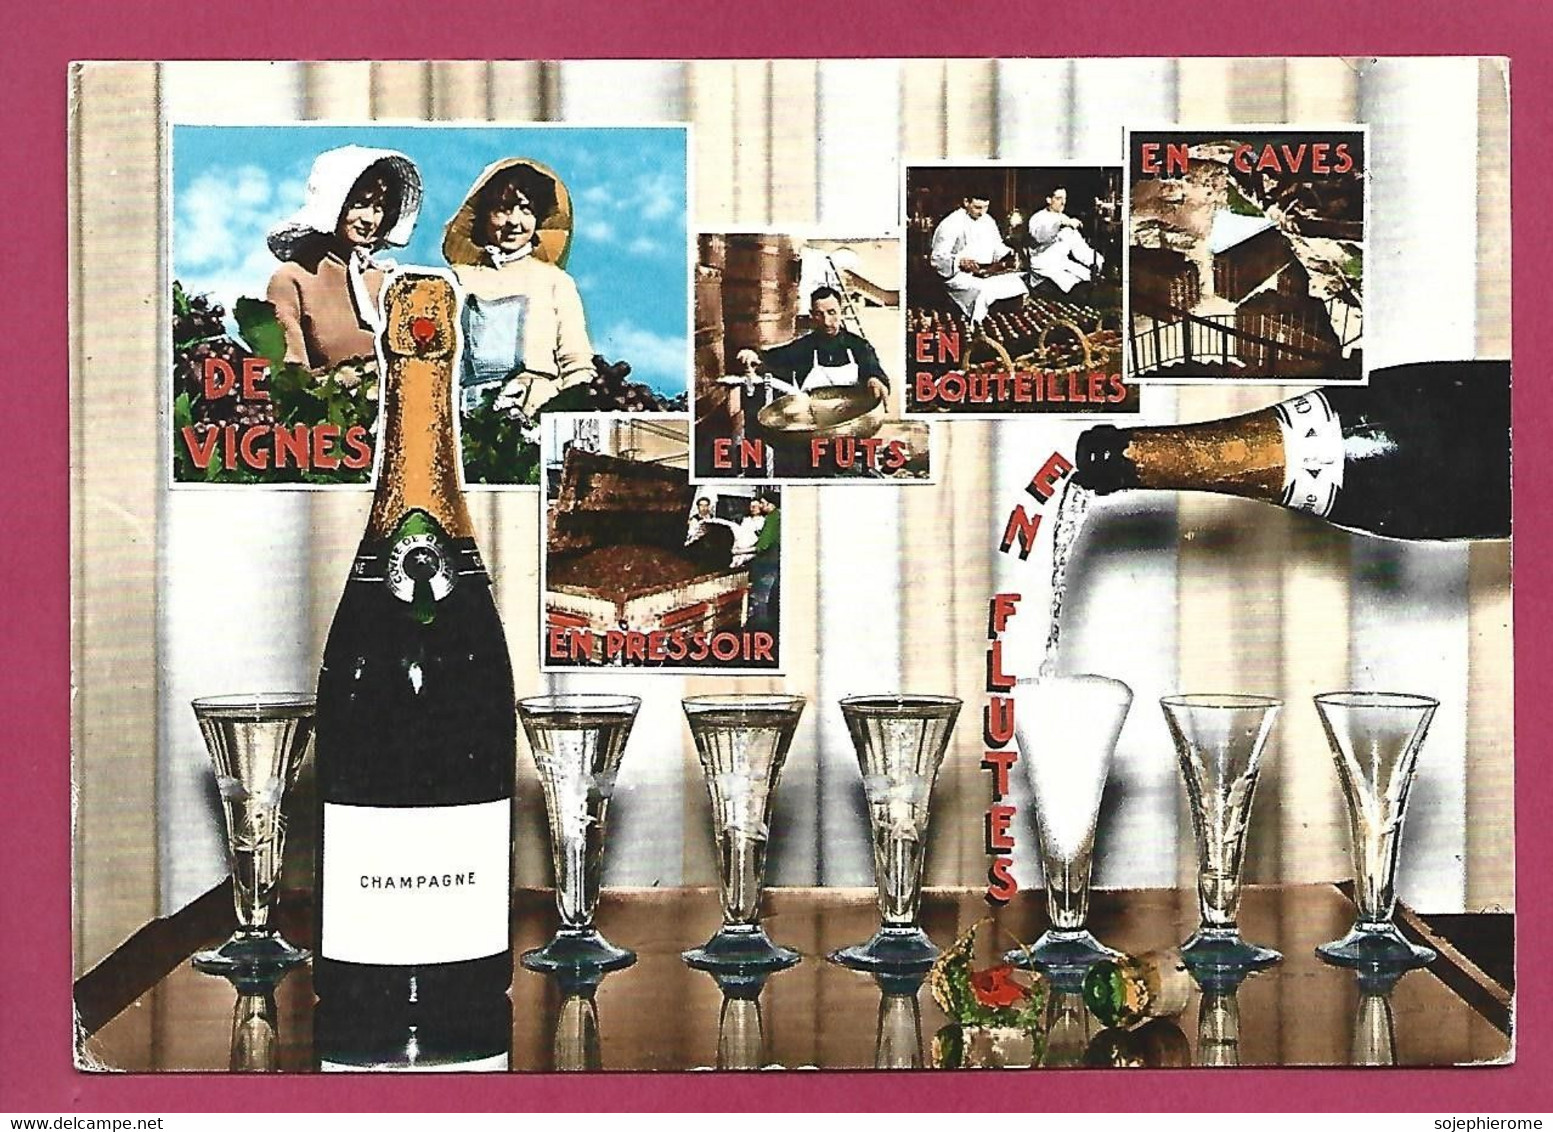 Champagne De Vignes En Pressoir En Fûts En Bouteilles En Caves 2scans - Champagne-Ardenne